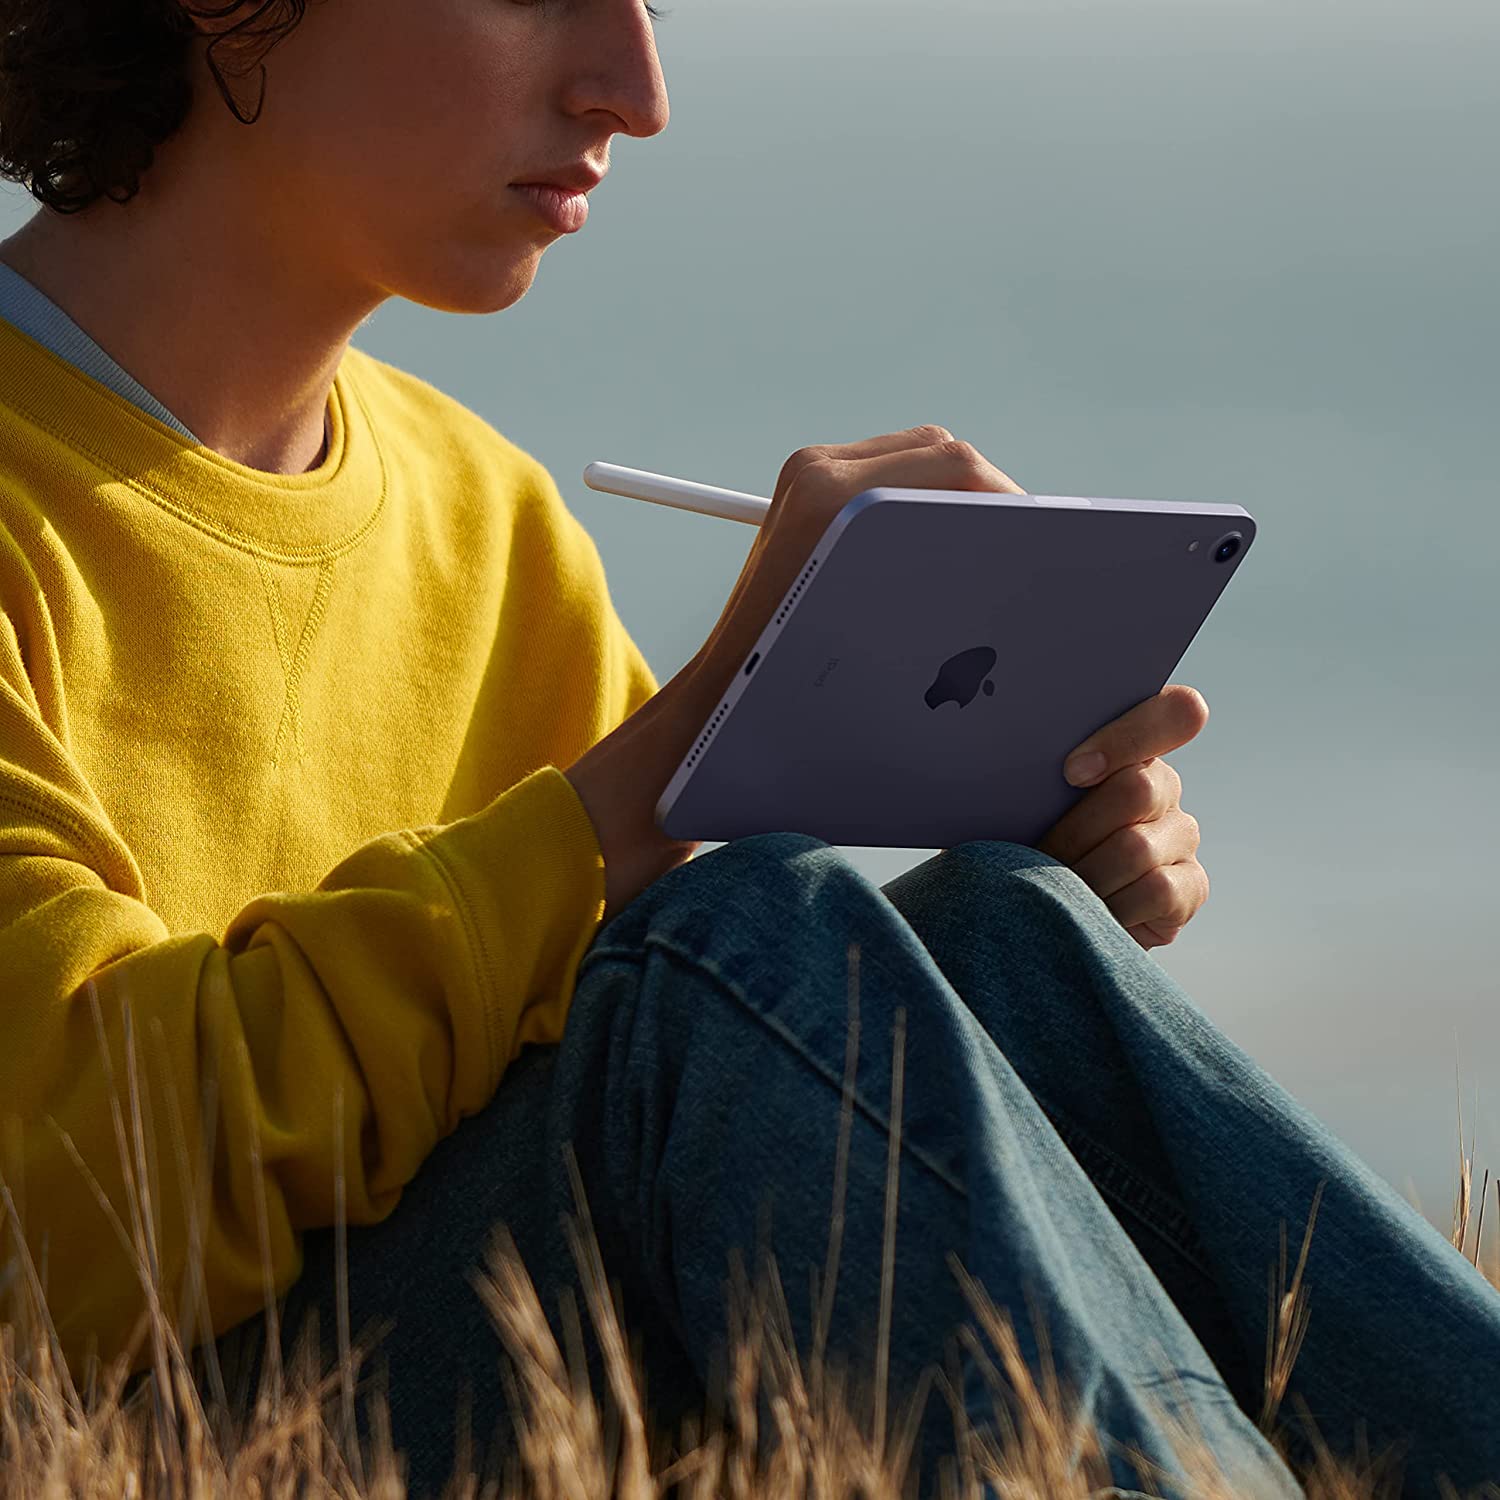 Apple iPad Mini 6 (64GB, Wi-Fi, Space Gray) Bundle with Blue Moroccan Sleeve